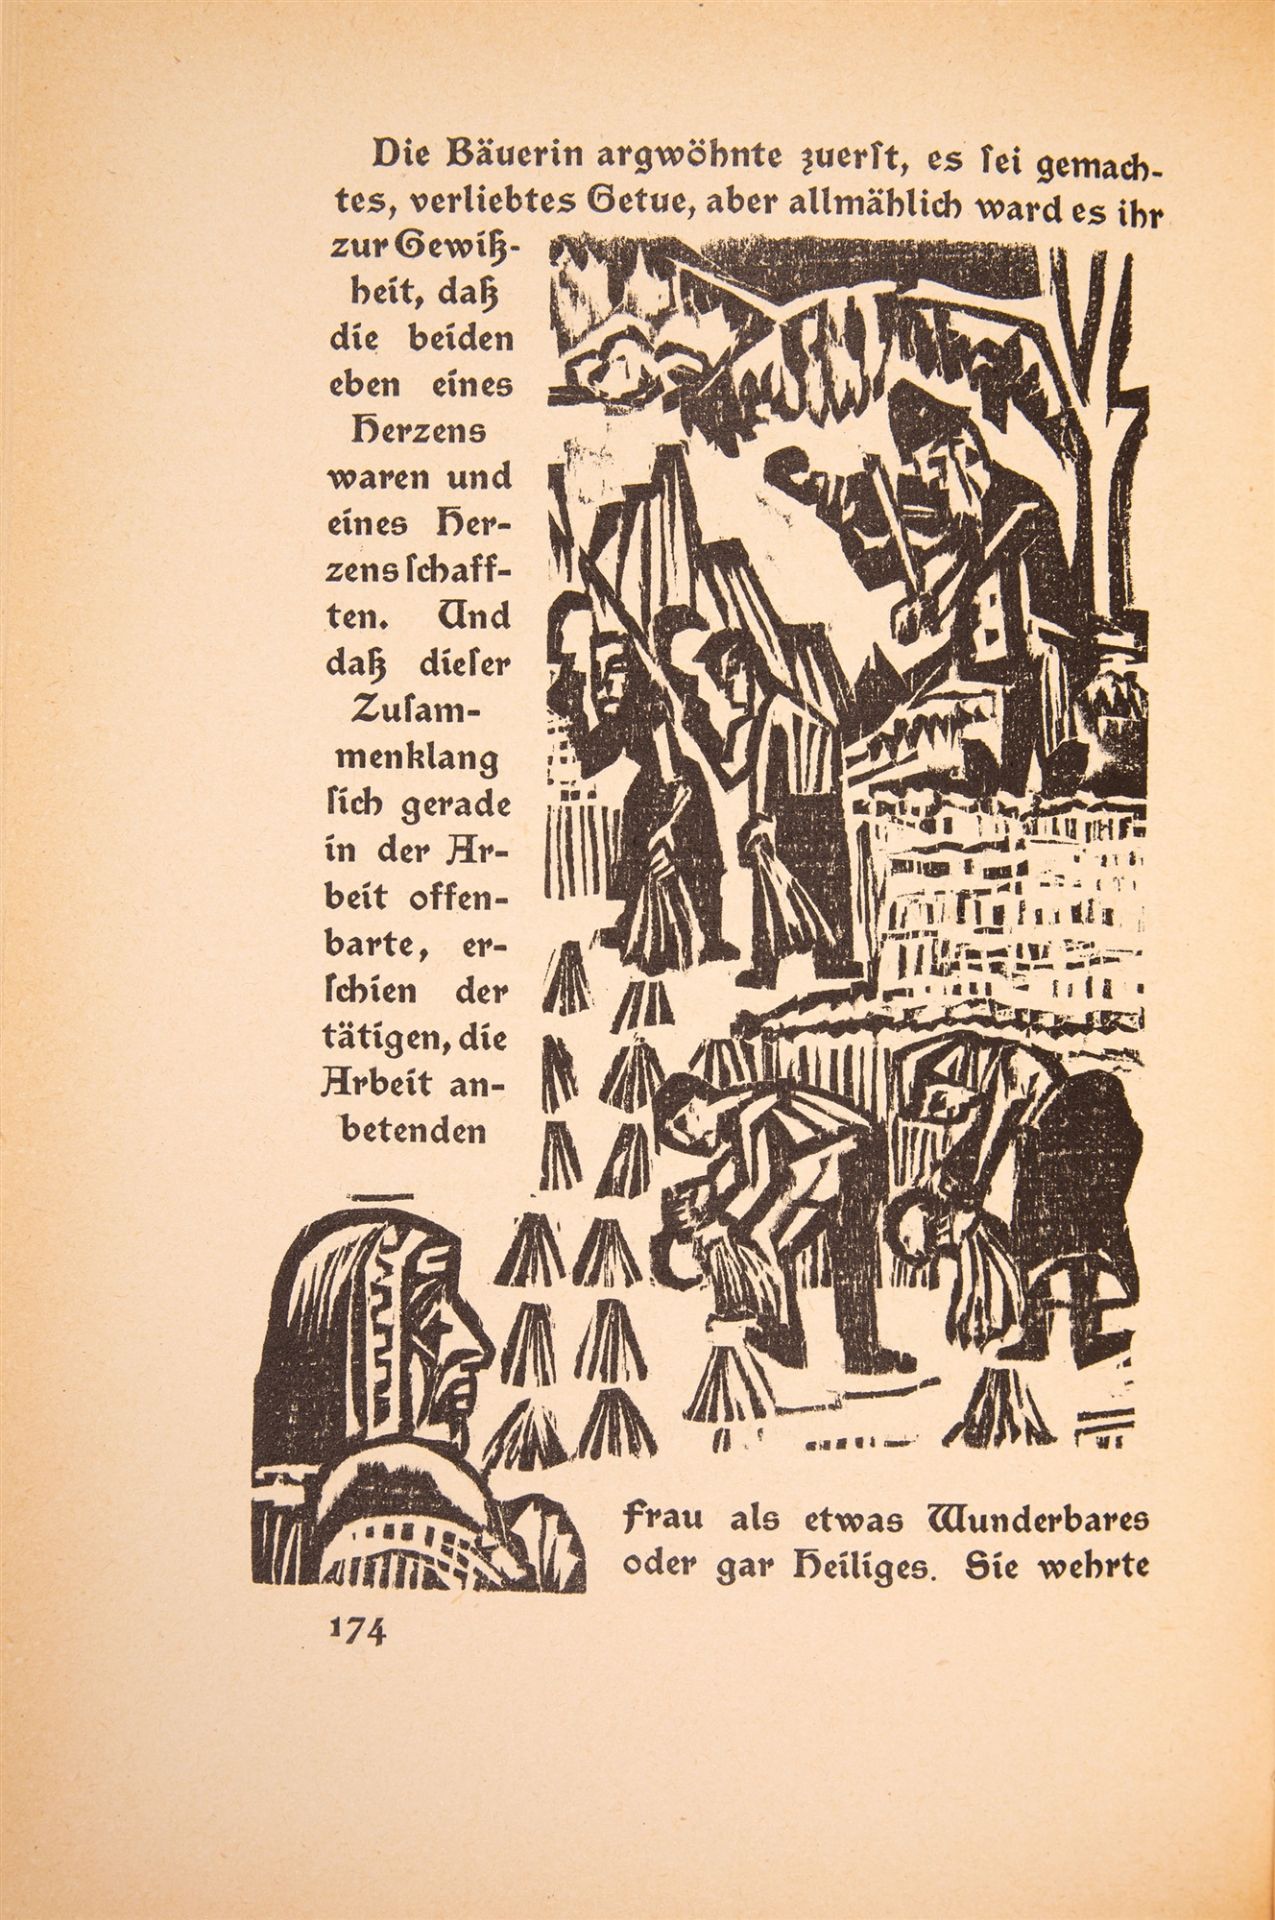 E. L. Kirchner / J. Bosshart, Neben der Heerstraße. Zürich & Leipzig 1923.